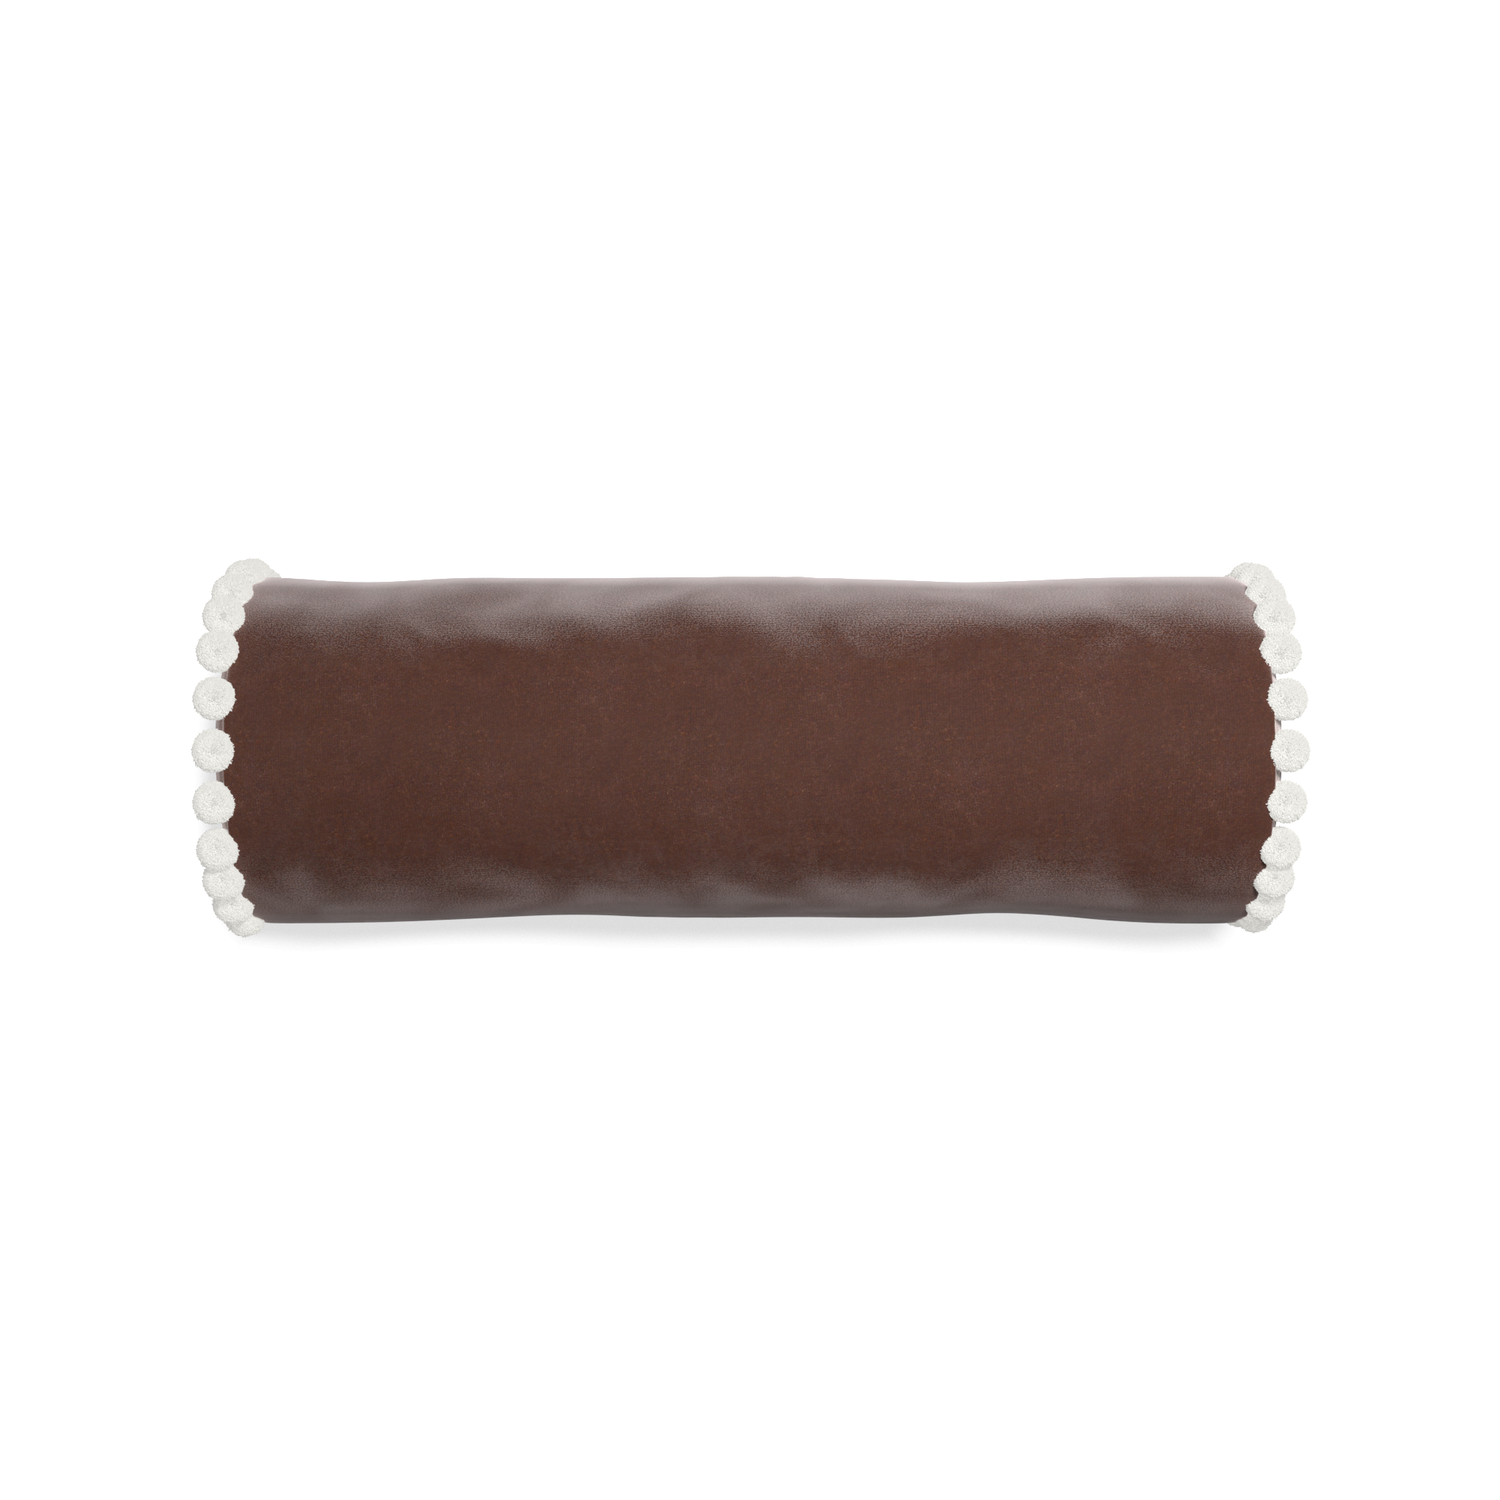 bolster brown velvet pillow with white pom poms